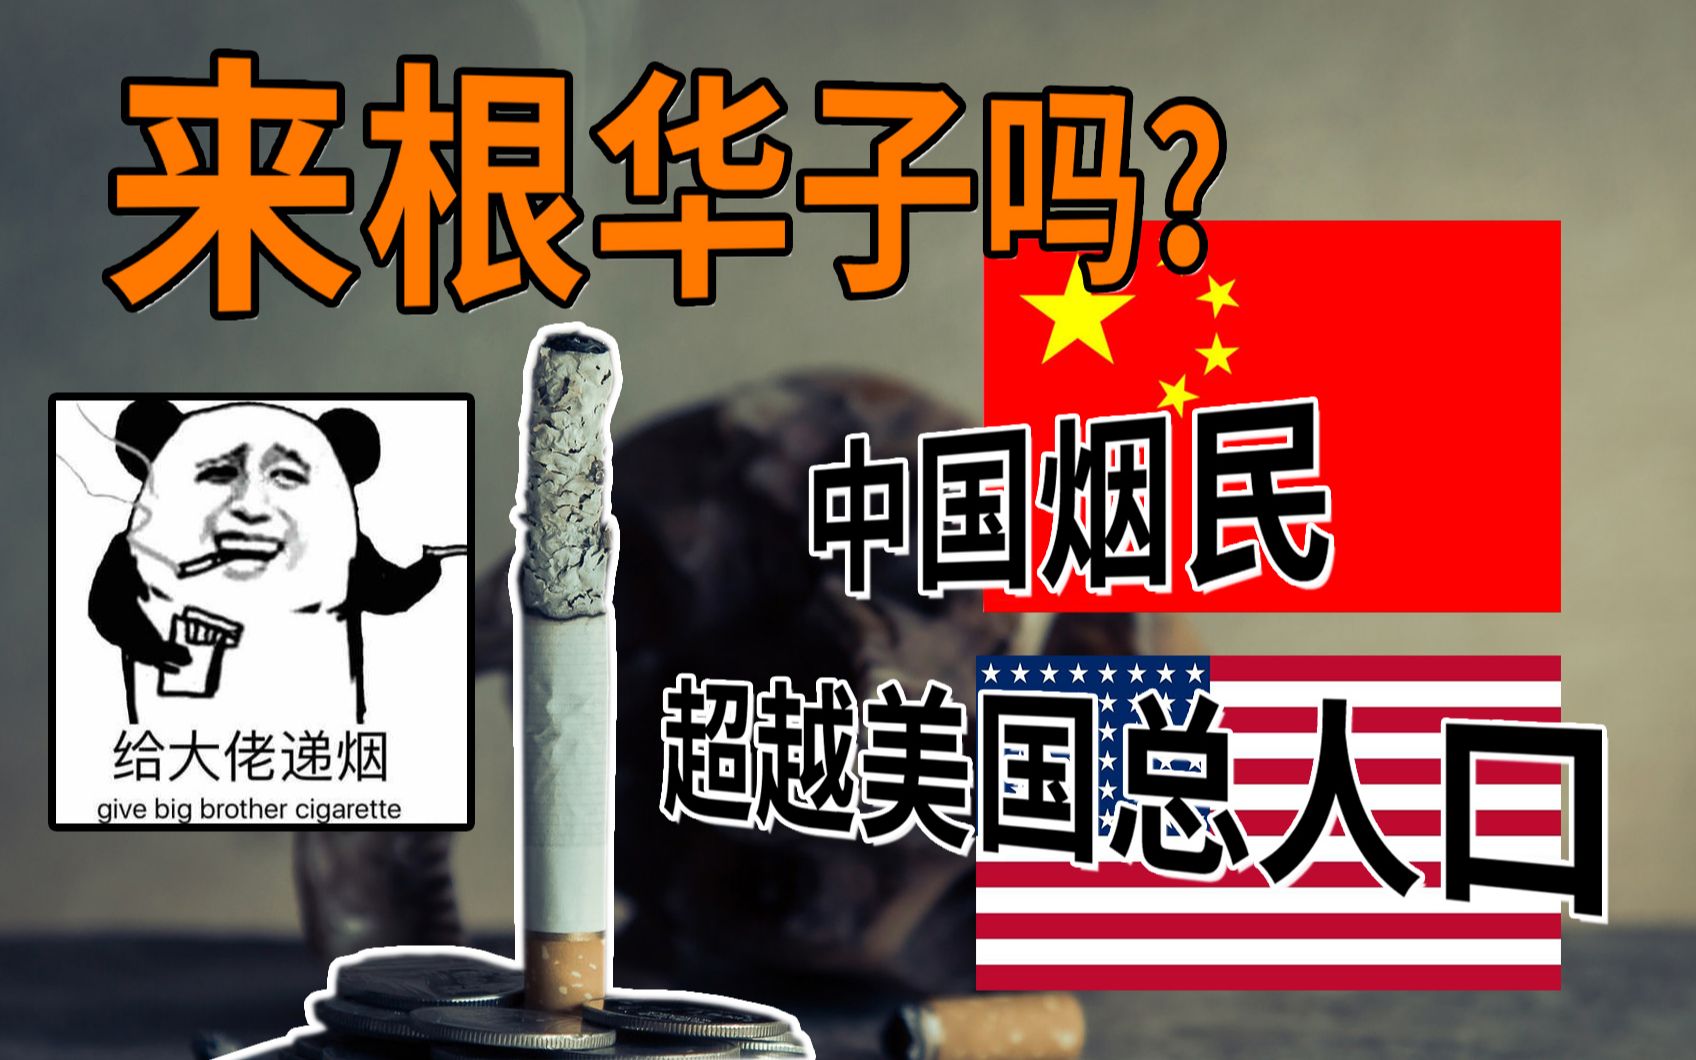 来根华子吗？中国烟民3.5亿比美国总人口还多,12056亿工商税利总额